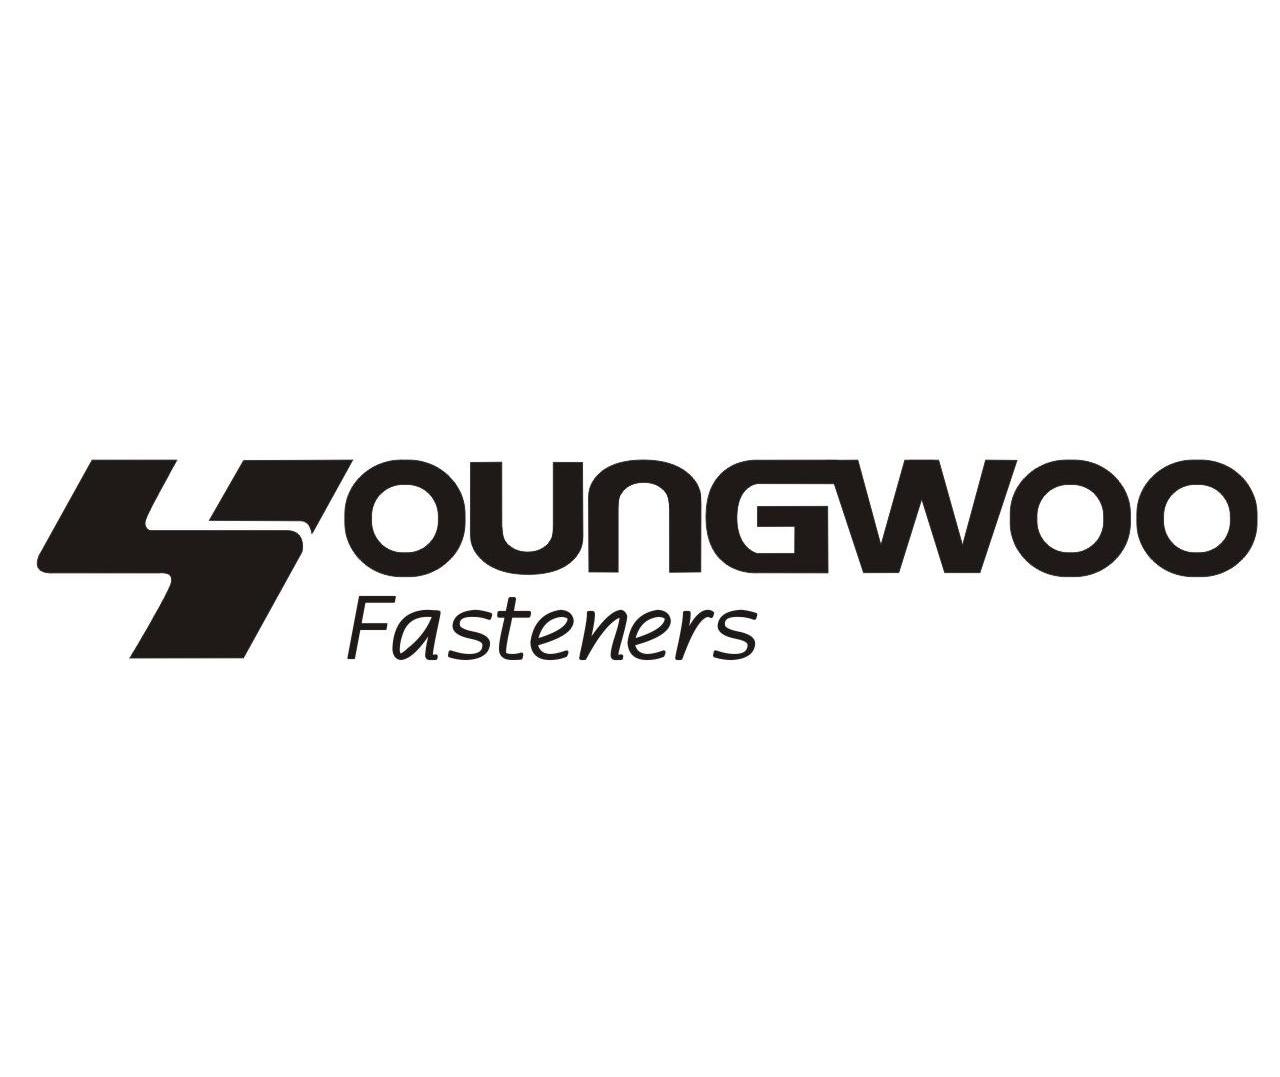  em>young /em>woo fasteners